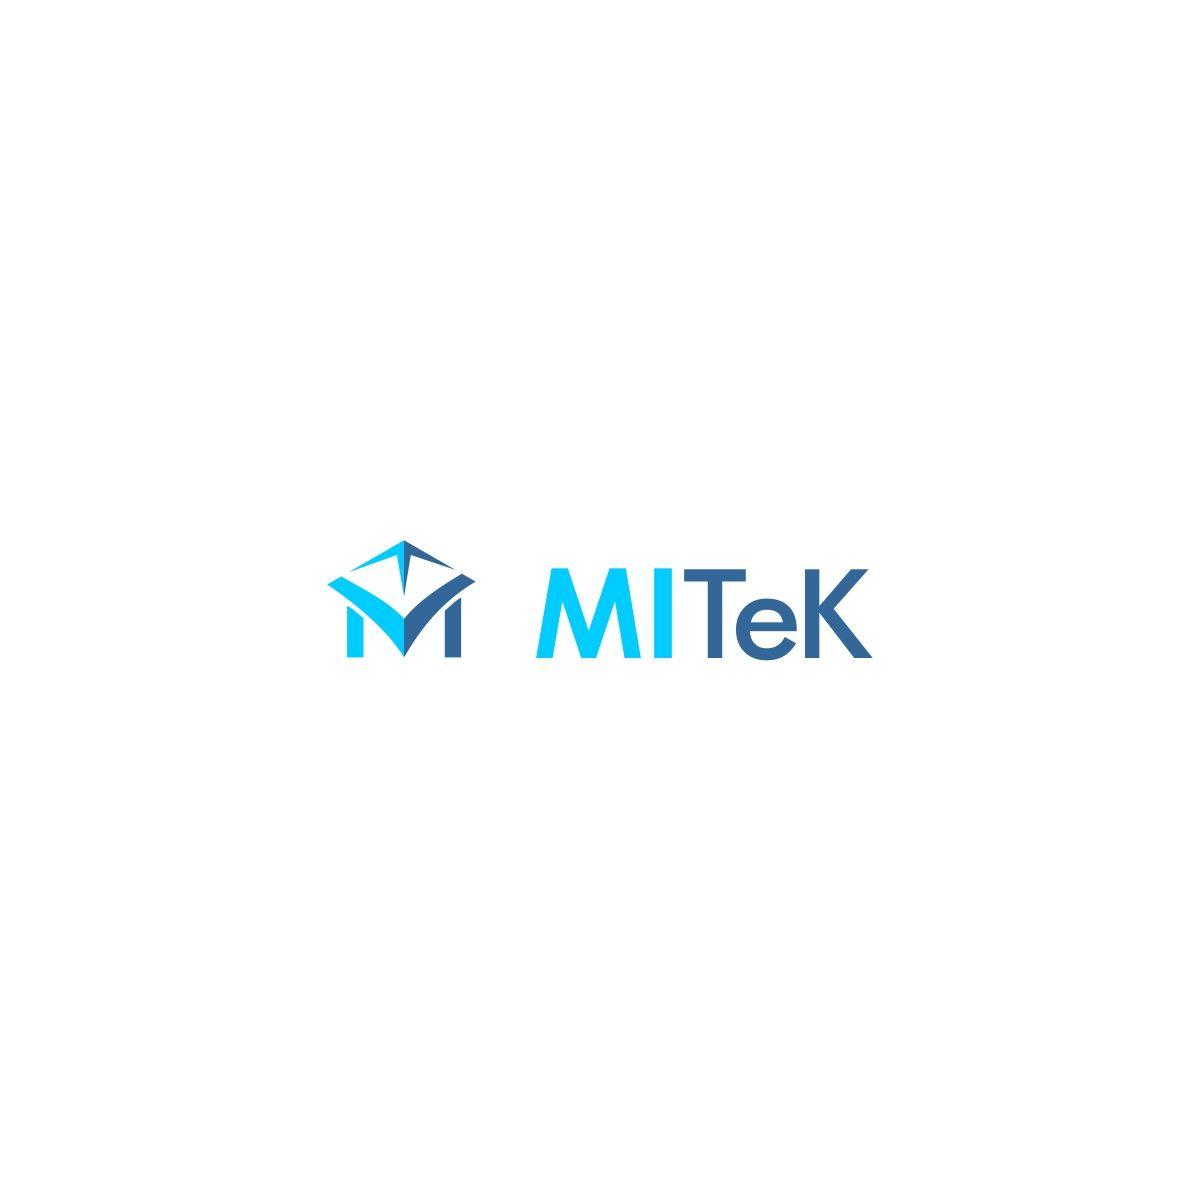 Mitek Logo - Logo Design for MITeK by ekakatrok. Design